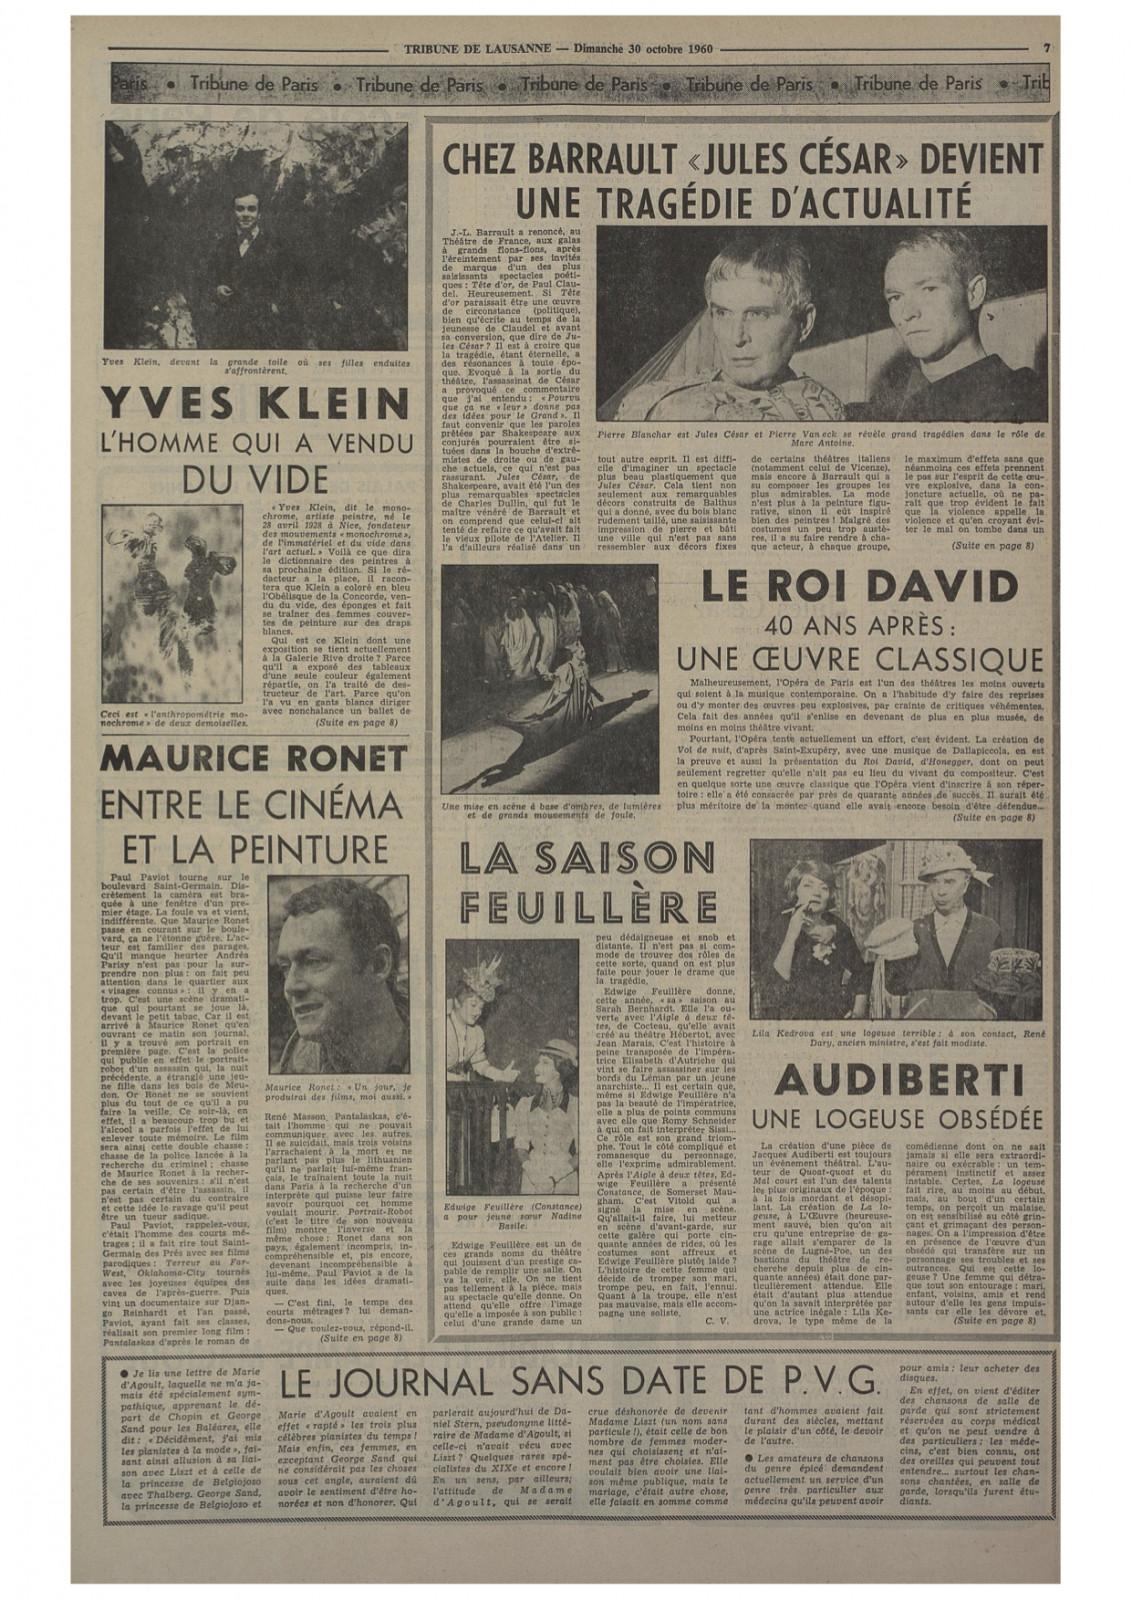 Pierre Descargues, "Klein, l'homme qui a vendu le vide", la Tribune de Lausanne